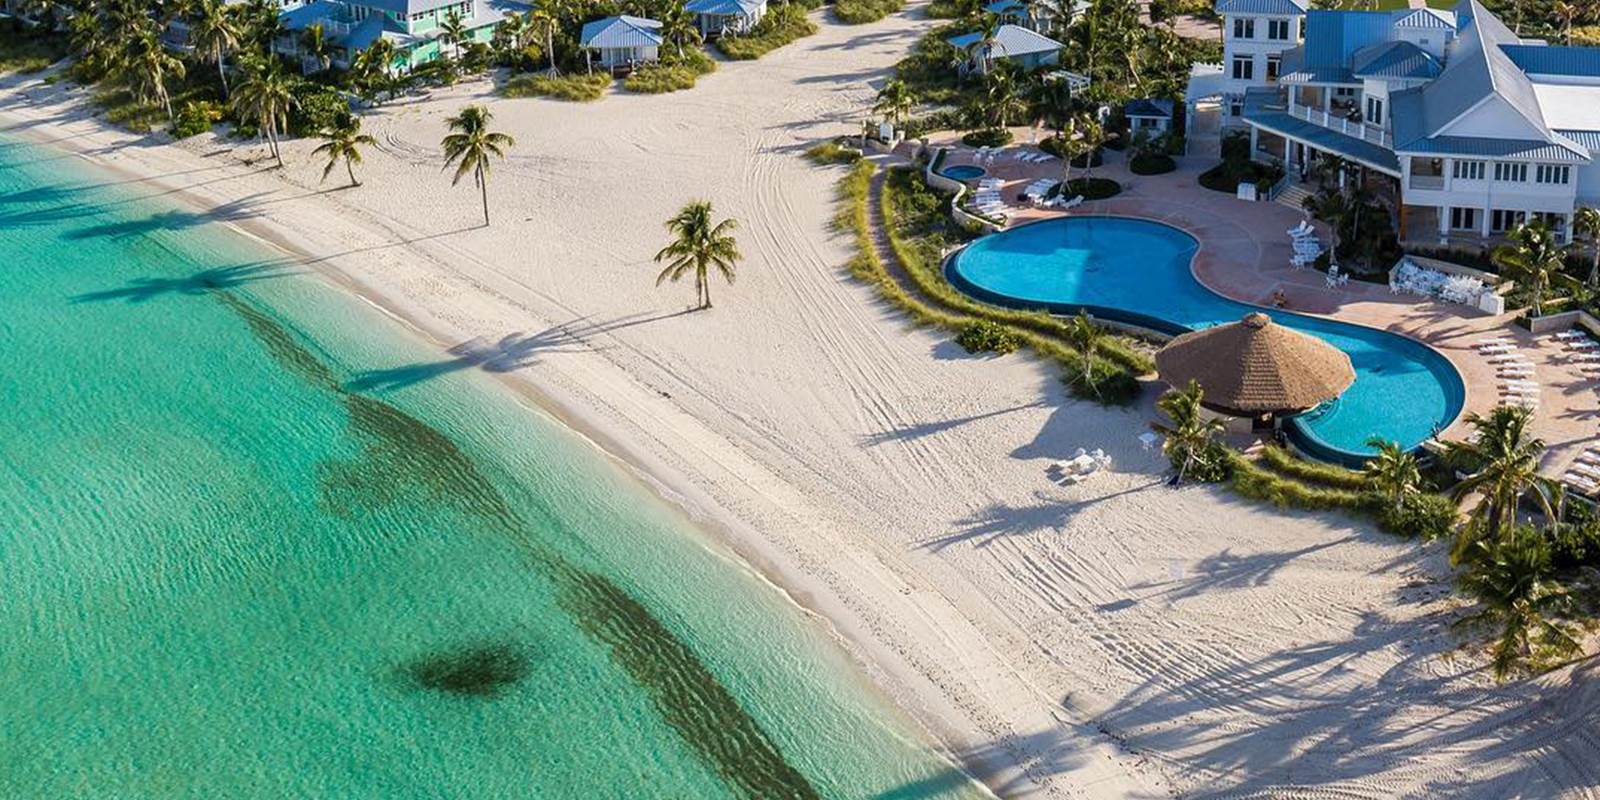 Beaches resort Bahamas